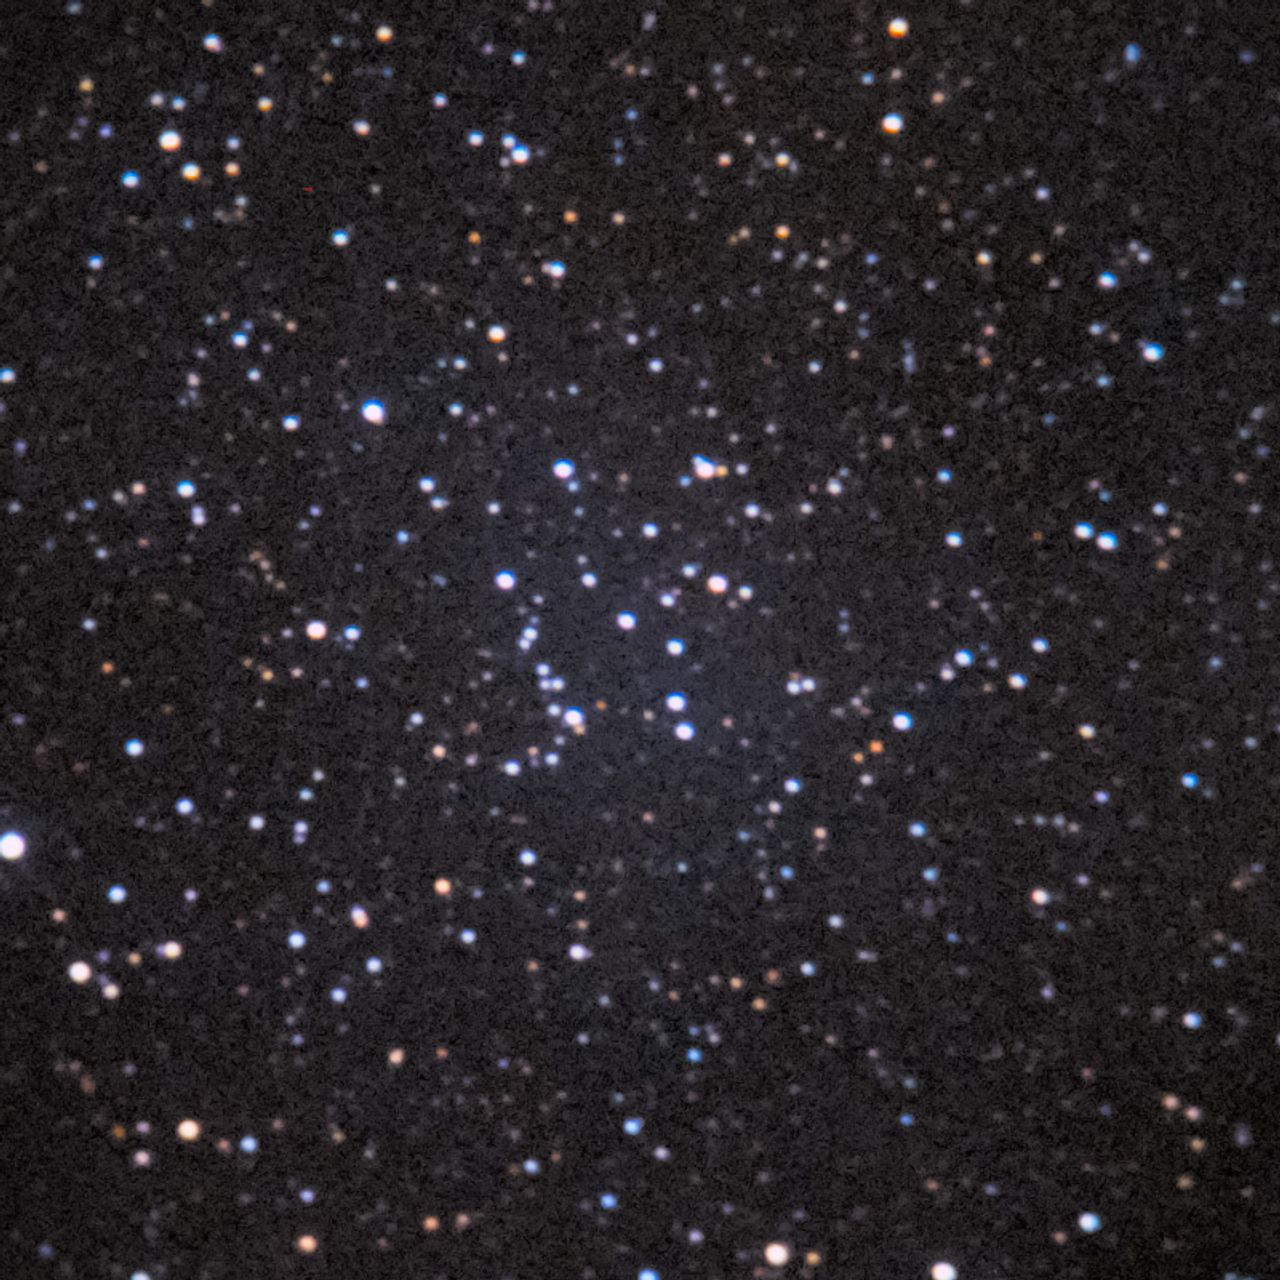 NGC2520